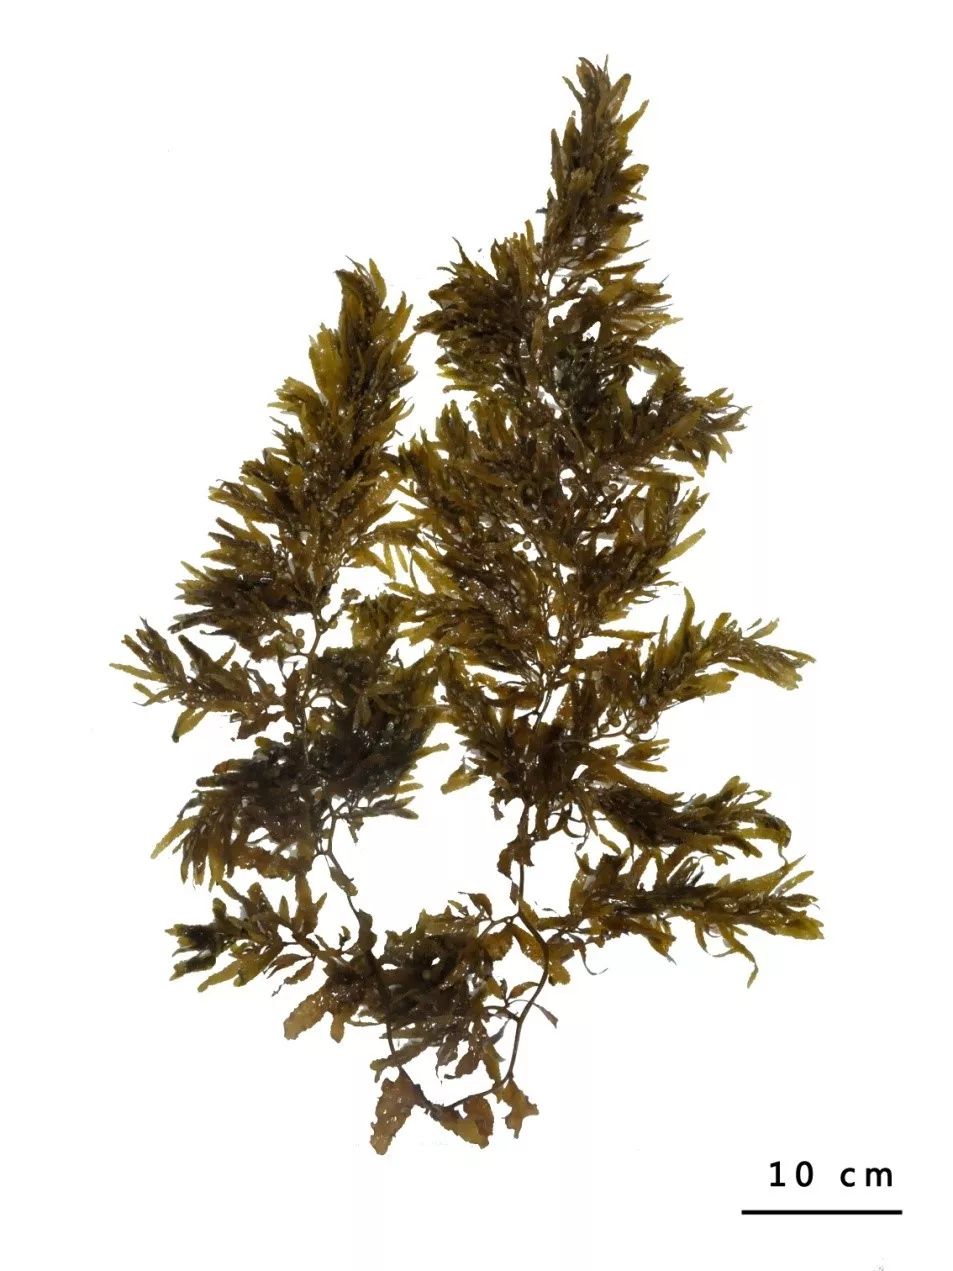 马尾藻藻类图片